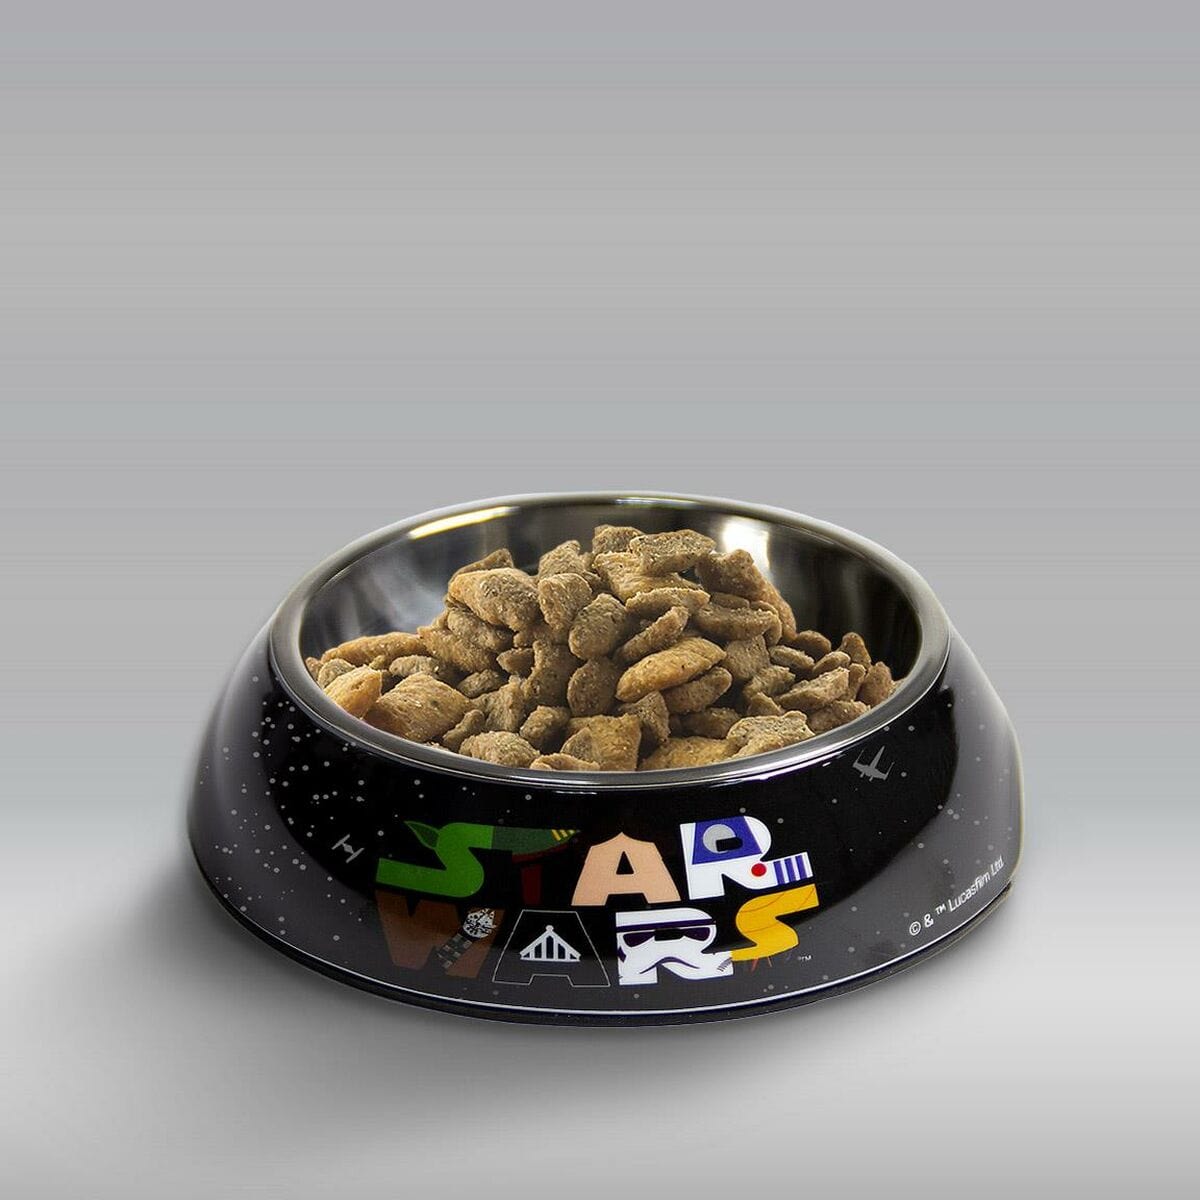 Star Wars Heim | Garten > Haustier > Nahrung Futternapf für Hunde Star Wars 760 ml Melamine Metall Bunt